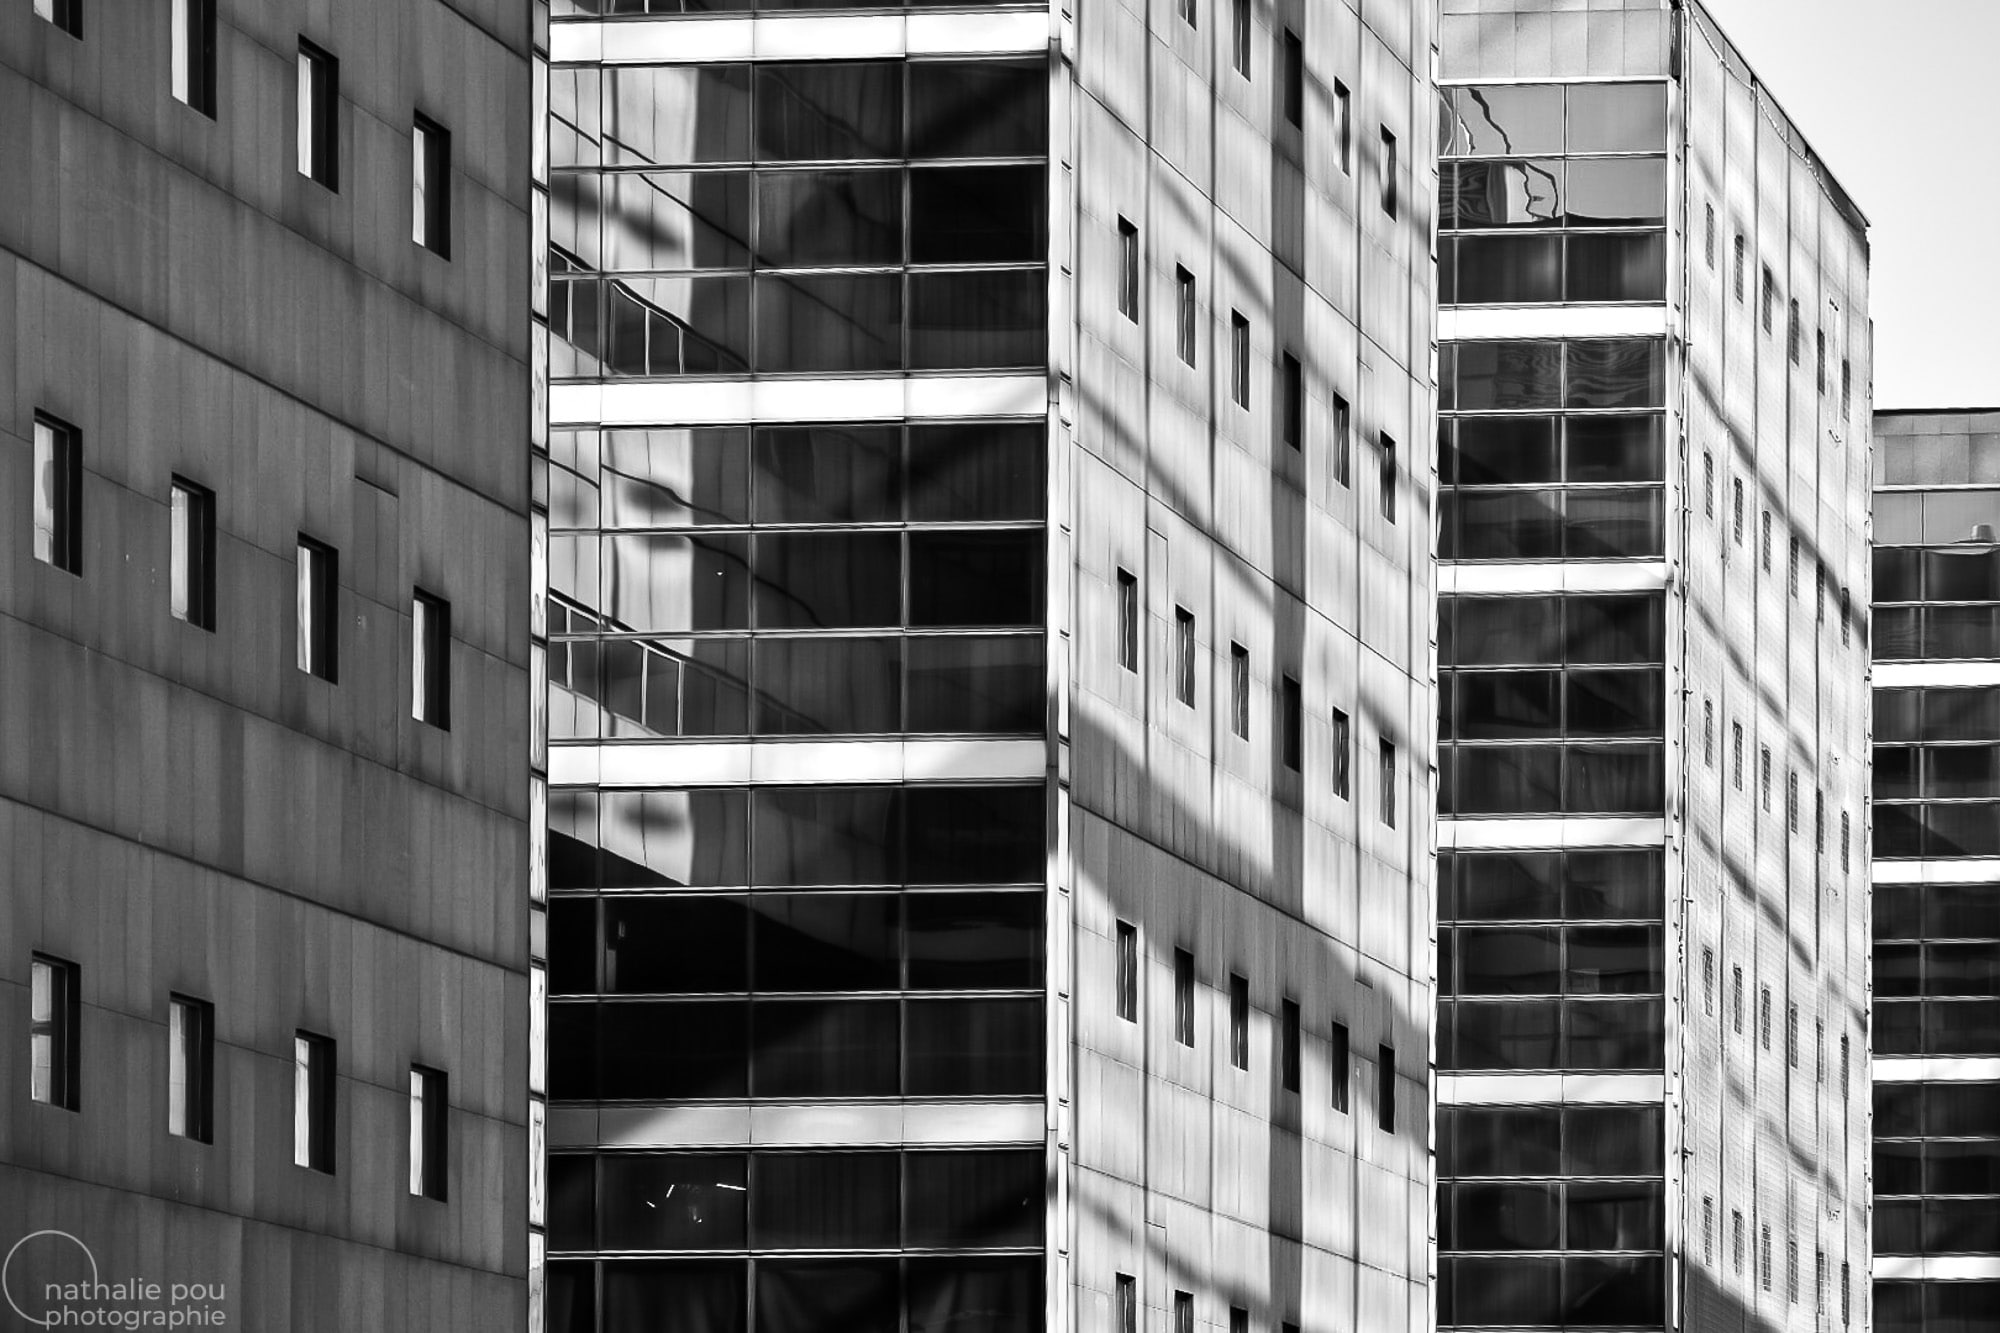 Photographe Architecture - La Défense